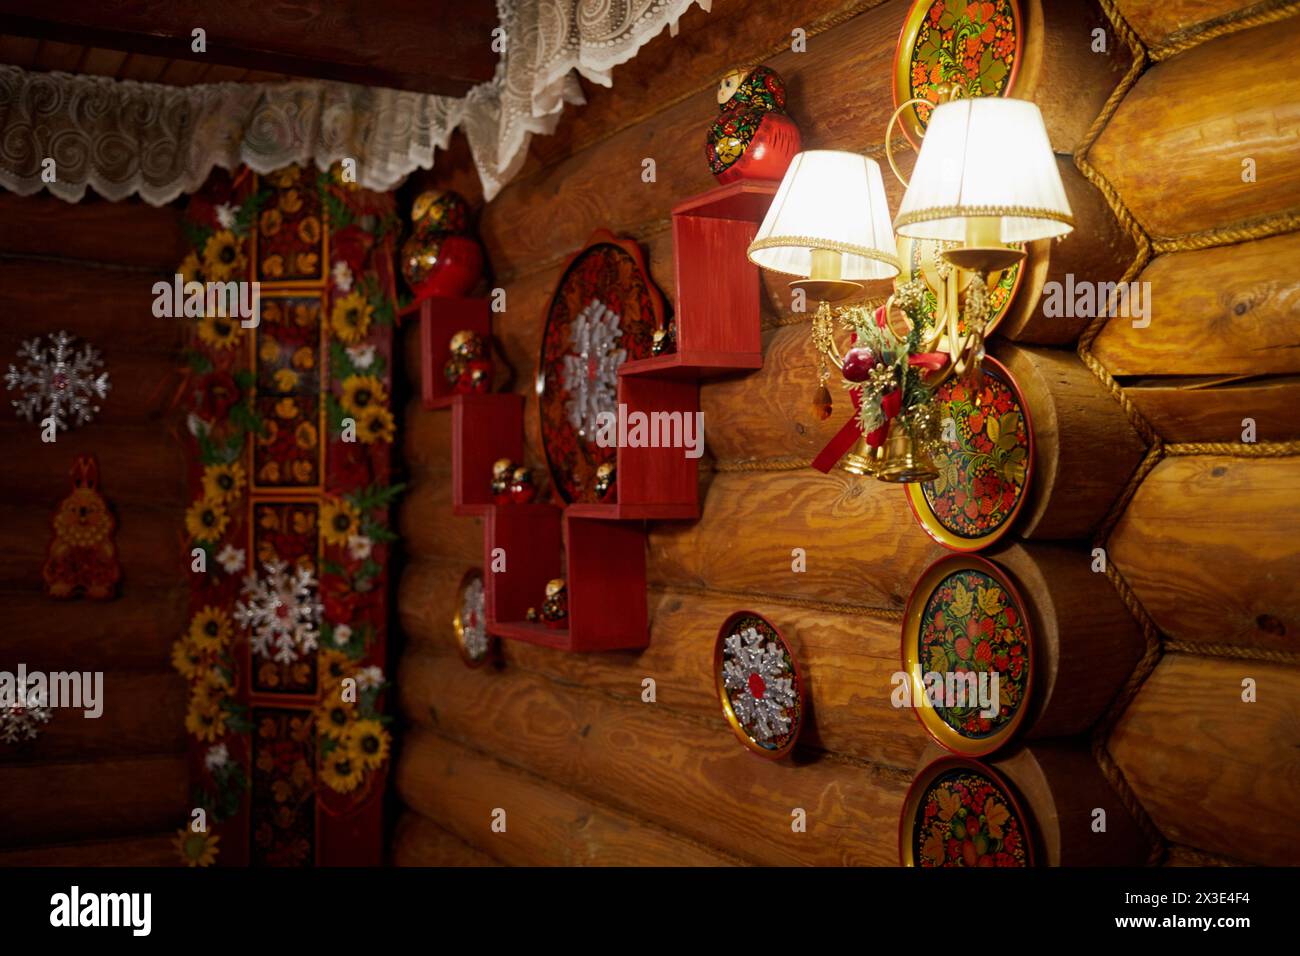 Mur de bûches de bois dans le chalet décoré avec des plats peints dans le style folklorique Khokhloma et des flocons de neige artificiels. Banque D'Images